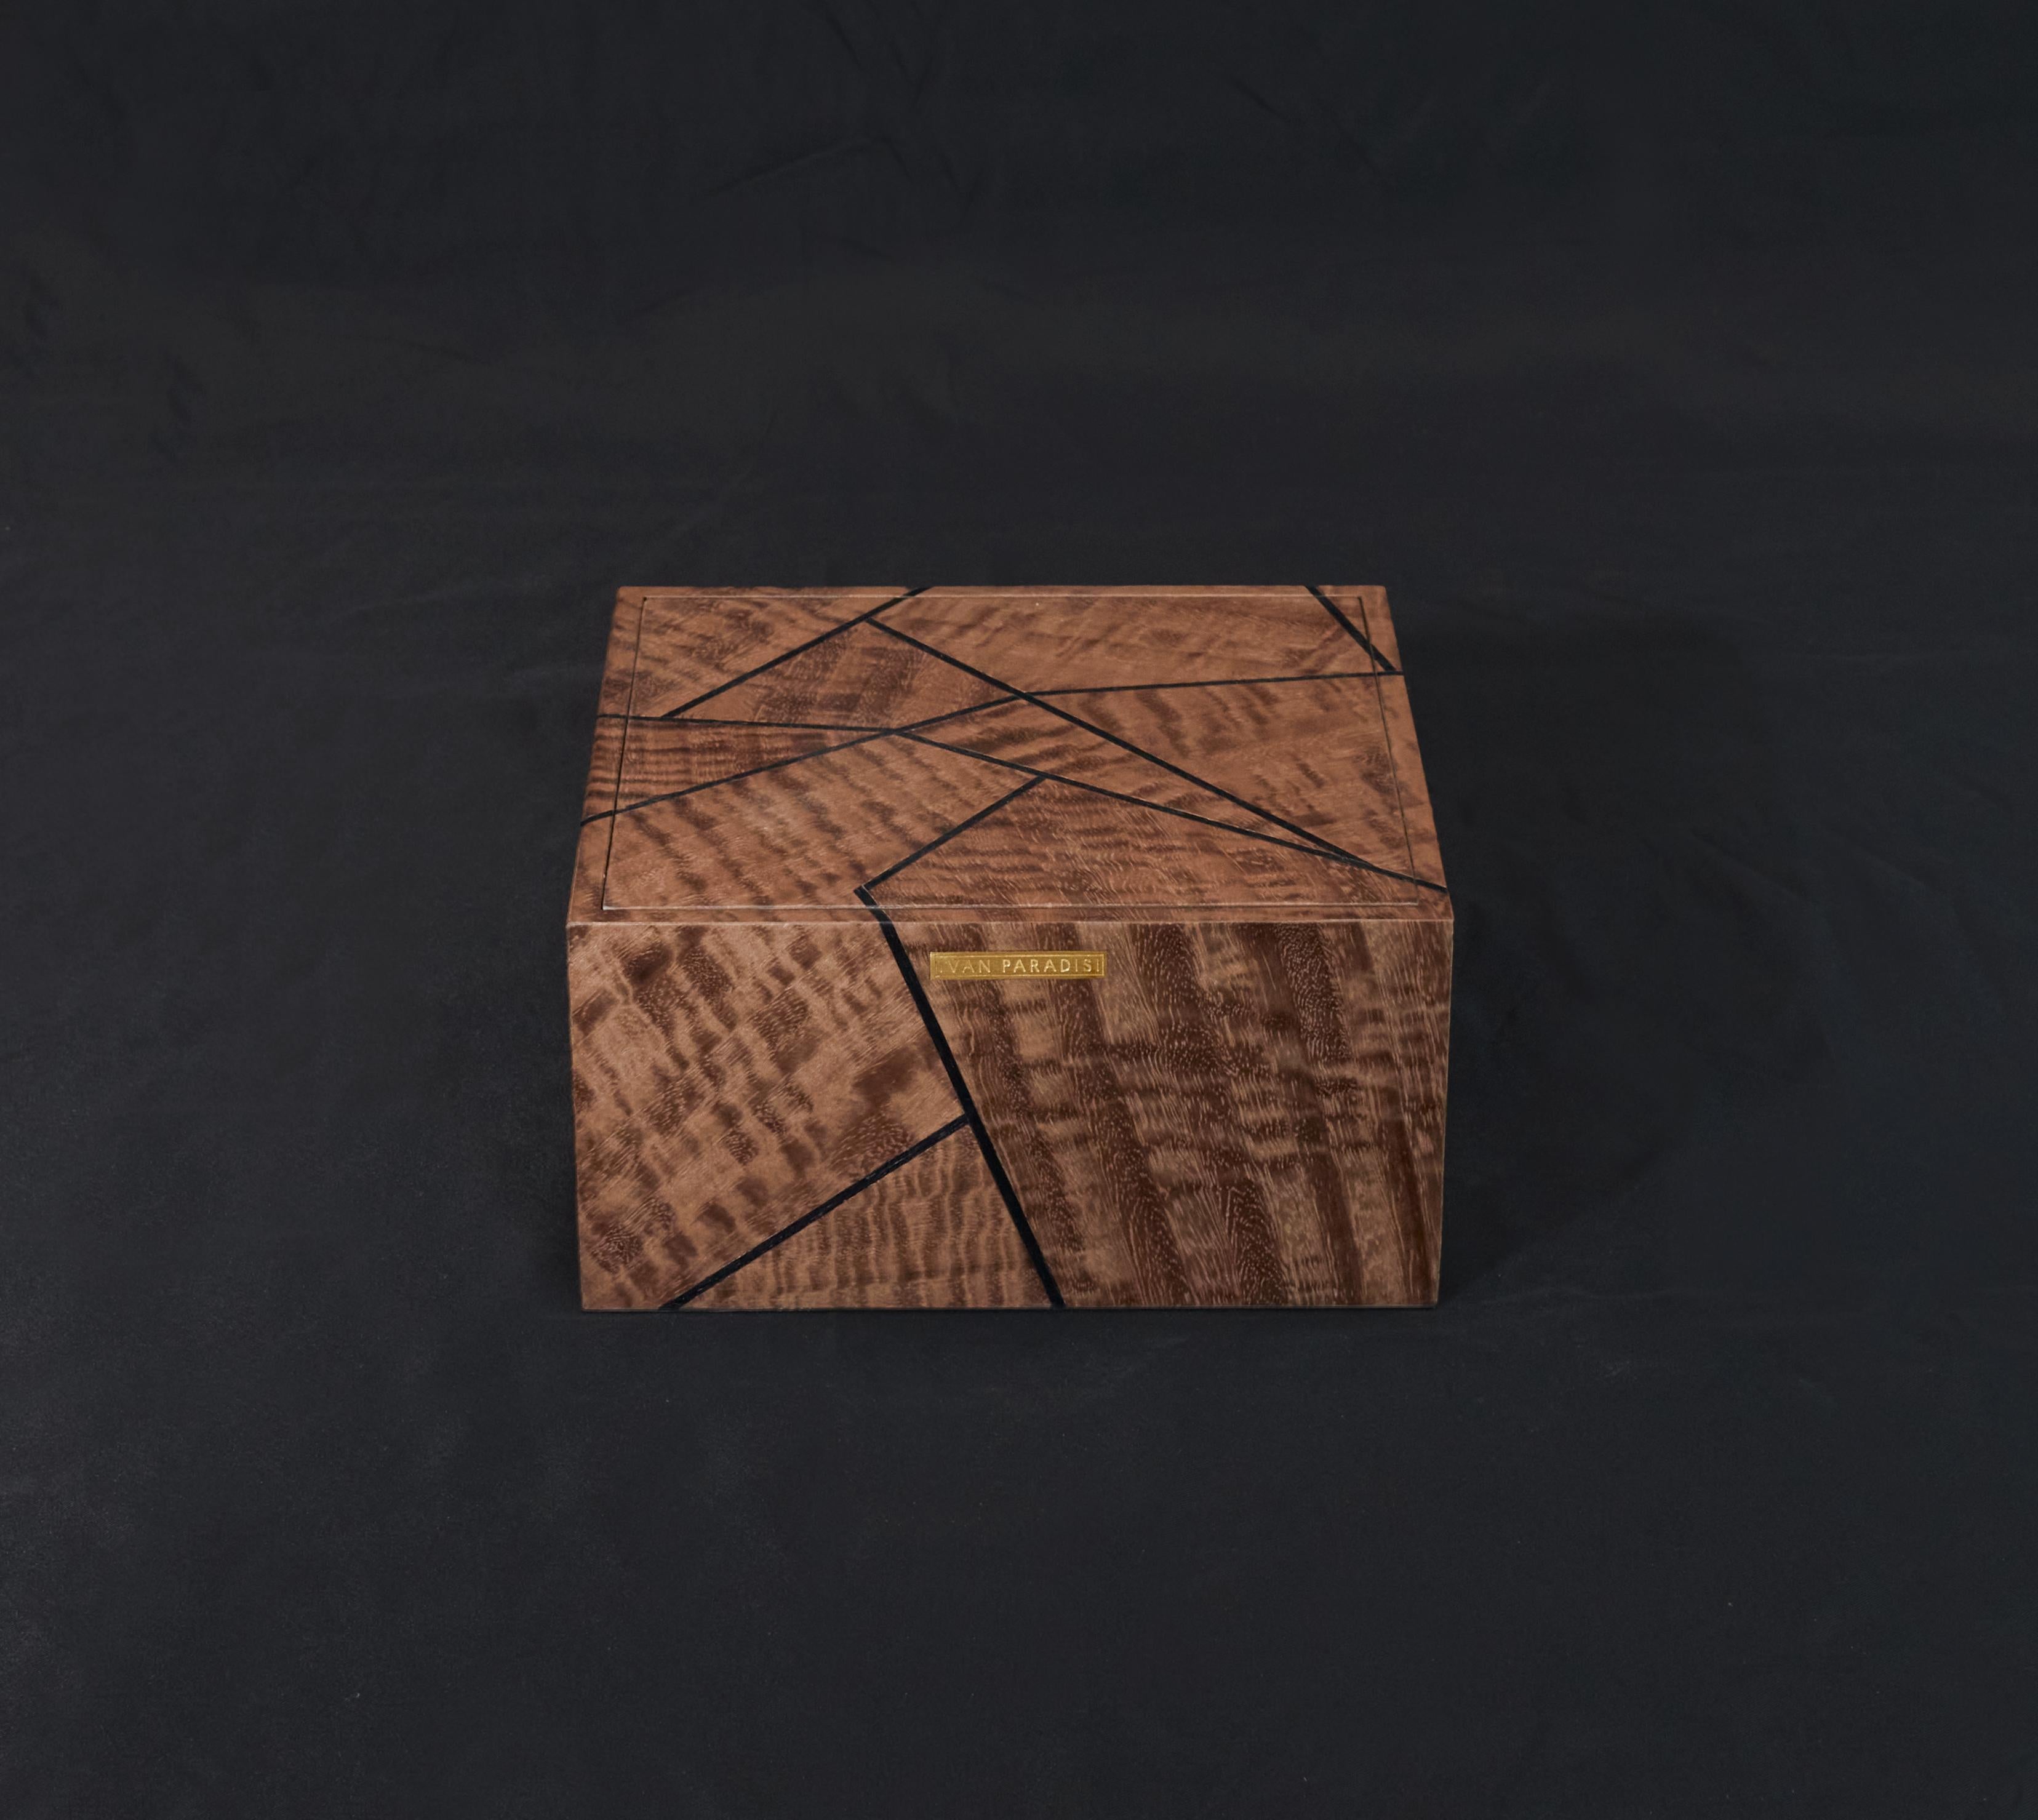 La boîte en bois Caruso est fabriquée à la main à partir de bois précieux dans l'atelier d'Ivan Paradisi Atelier. Son design simple, comme le célèbre accompagnement de la chanson de Caruso, n'a pas besoin de plus de décorations, car la beauté réside